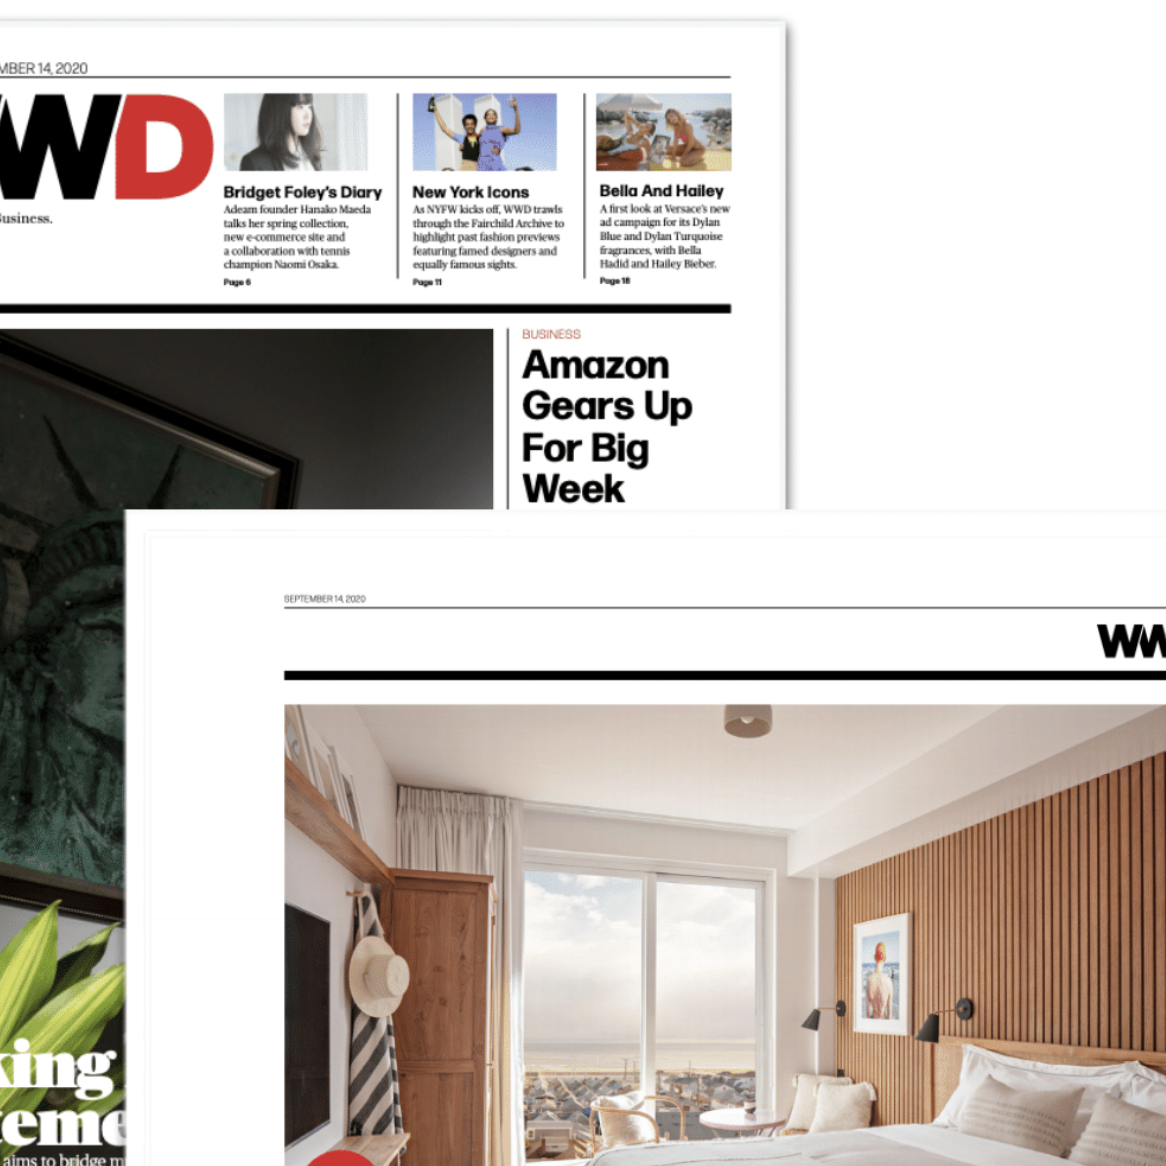 Article about The Rockaway Hotel in WWD by Kristen Tauer